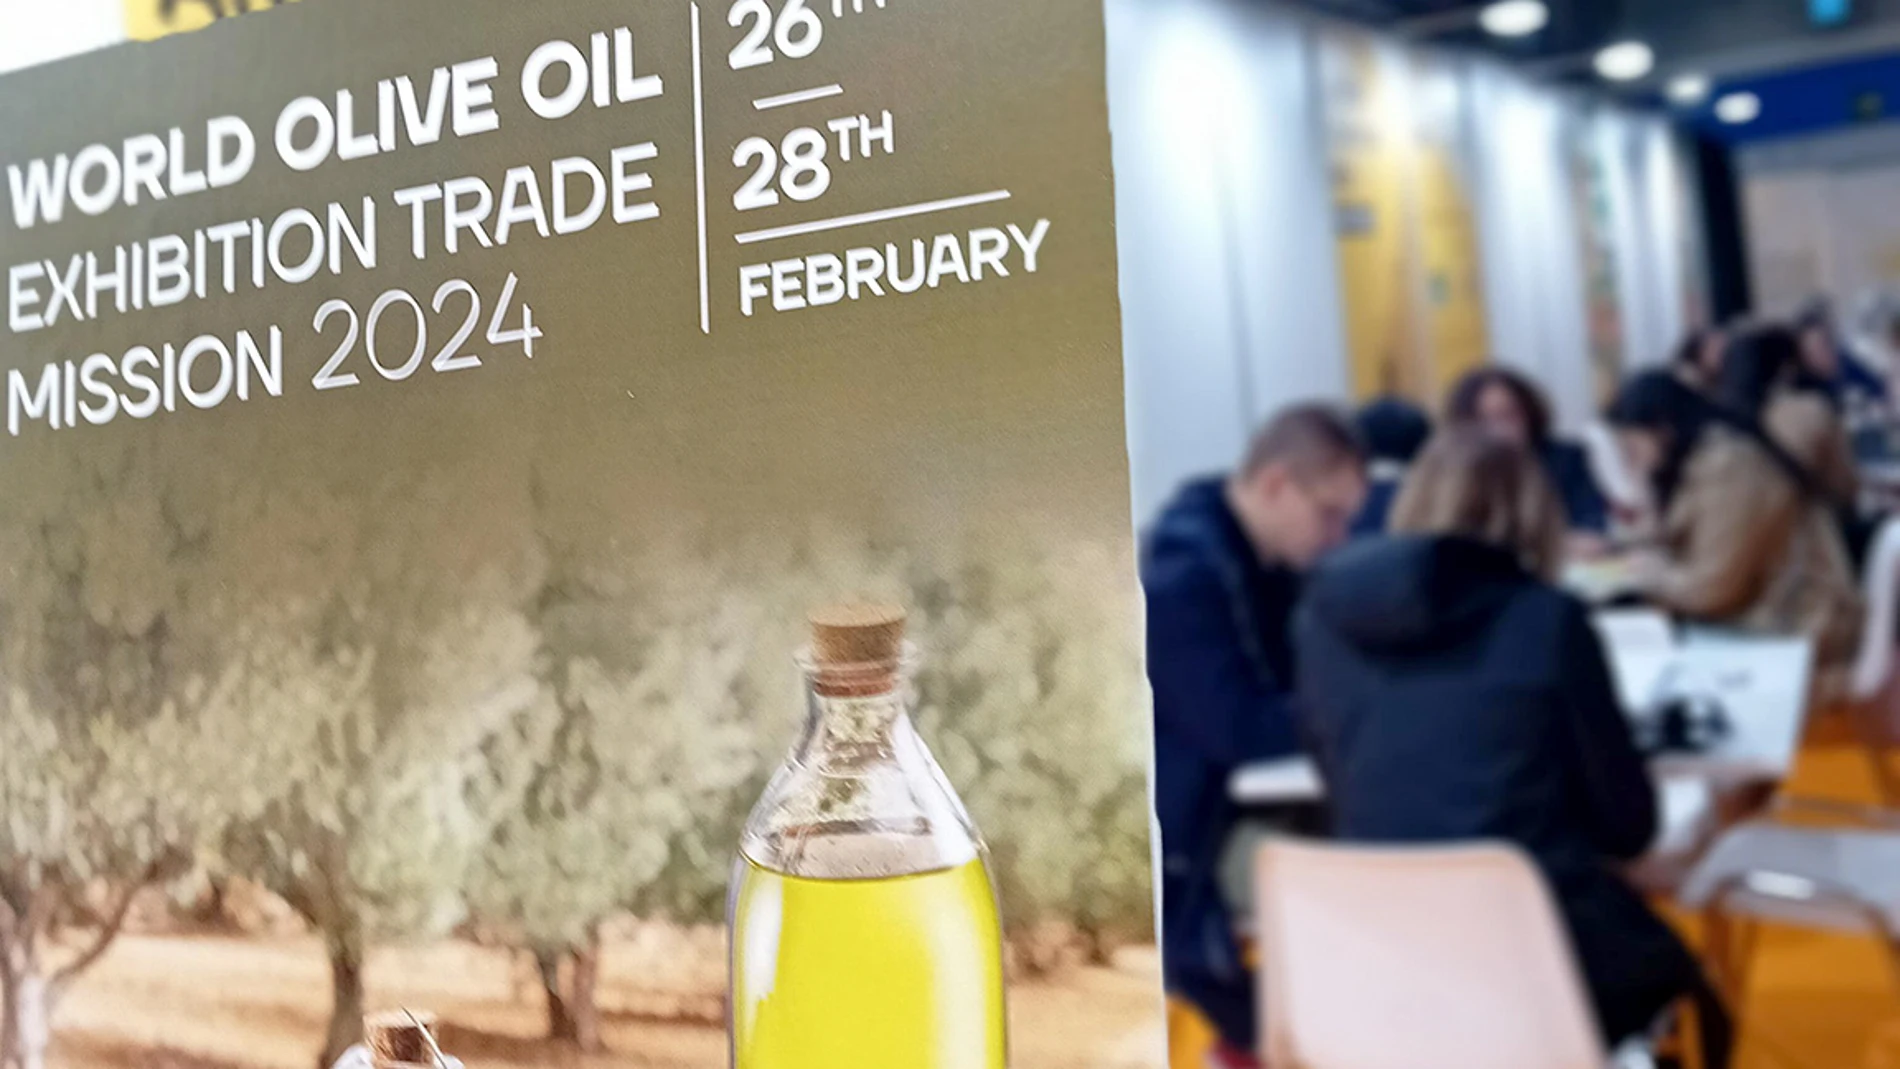 Encuentros de negocio en la World Olive Oil Exhibition. JUNTA 26/02/2024